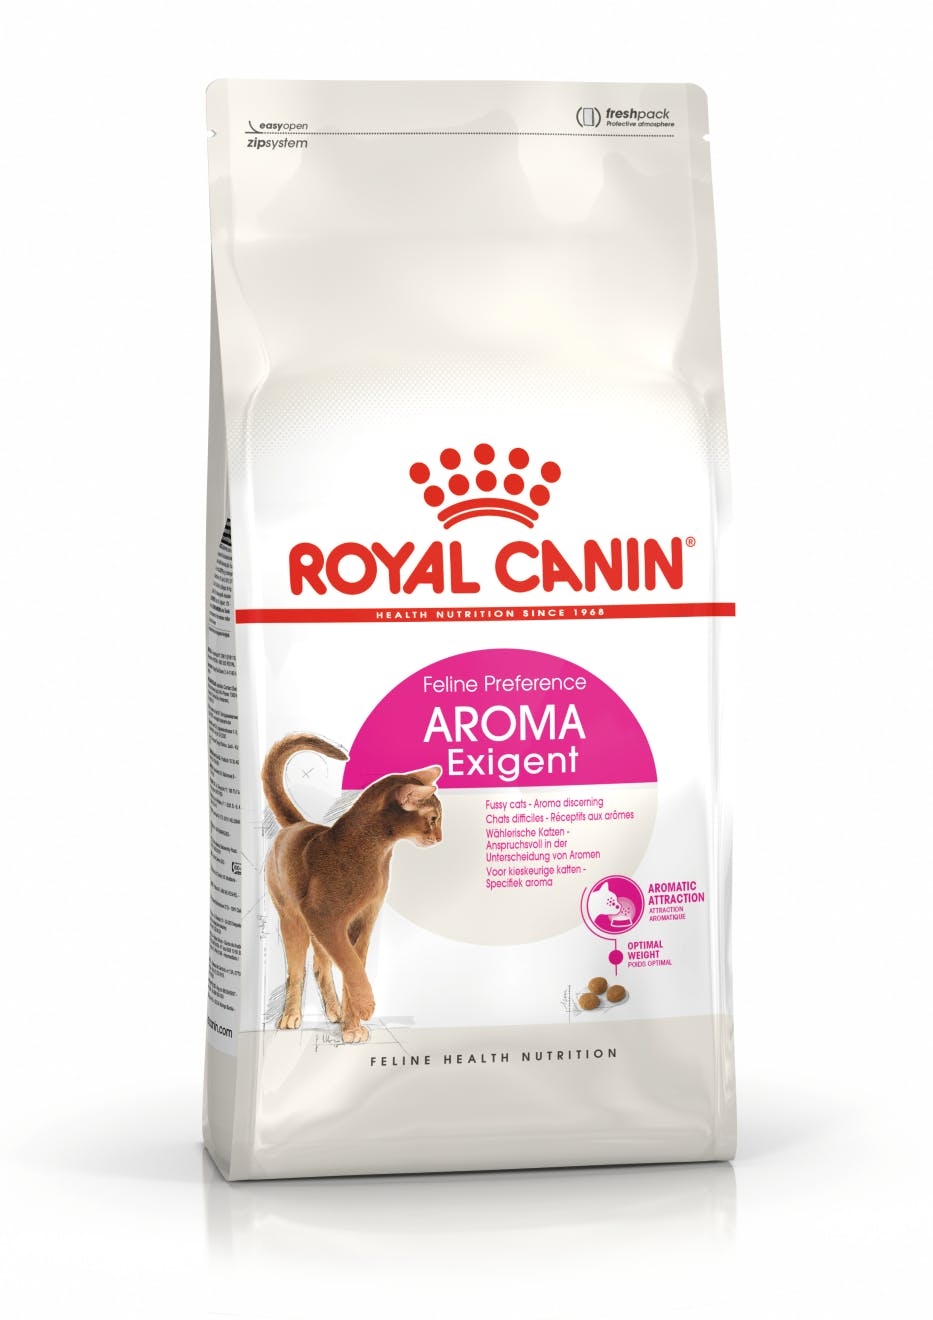 Billede af Royal Canin Aroma Exigent - Til kræsne katte, hvad angår duft. Over 1 år. 10kg.